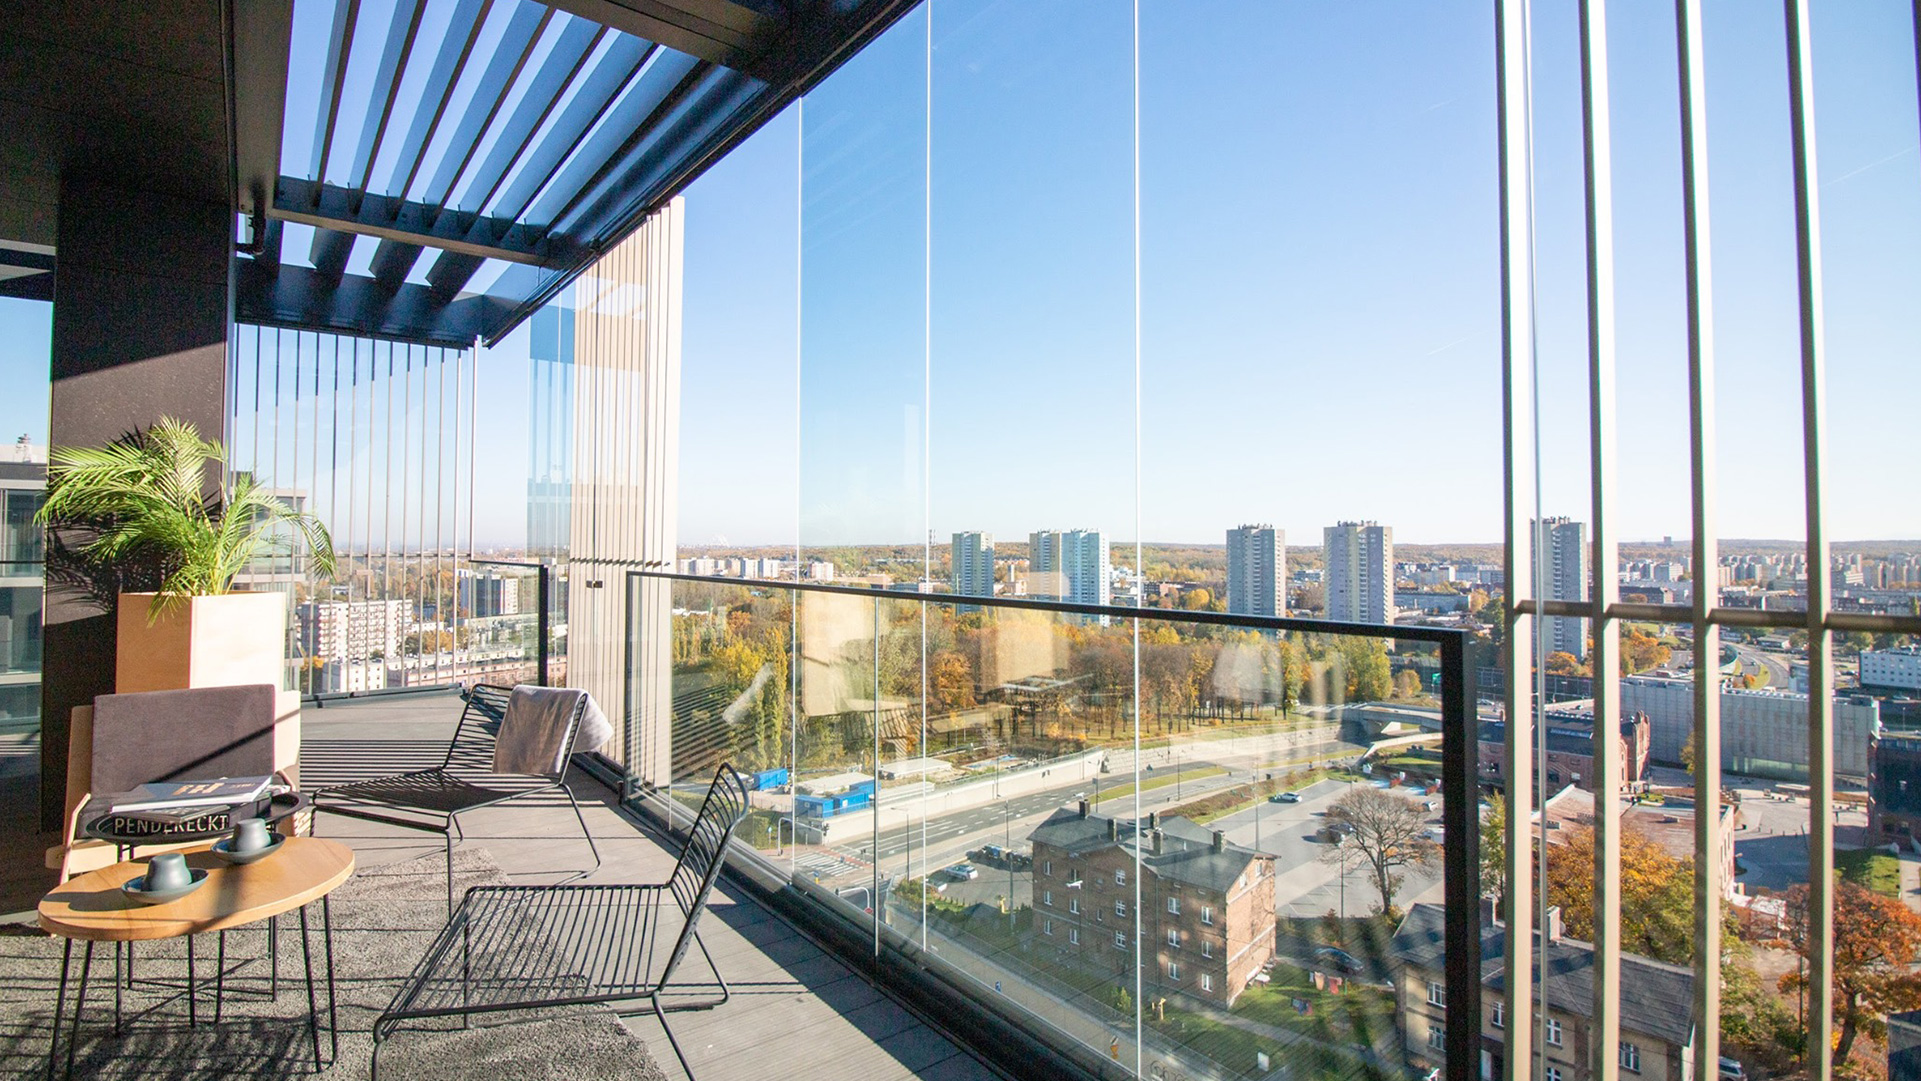 Verglaster Balkon in einem Hochhaus mit Blick auf die Stadt